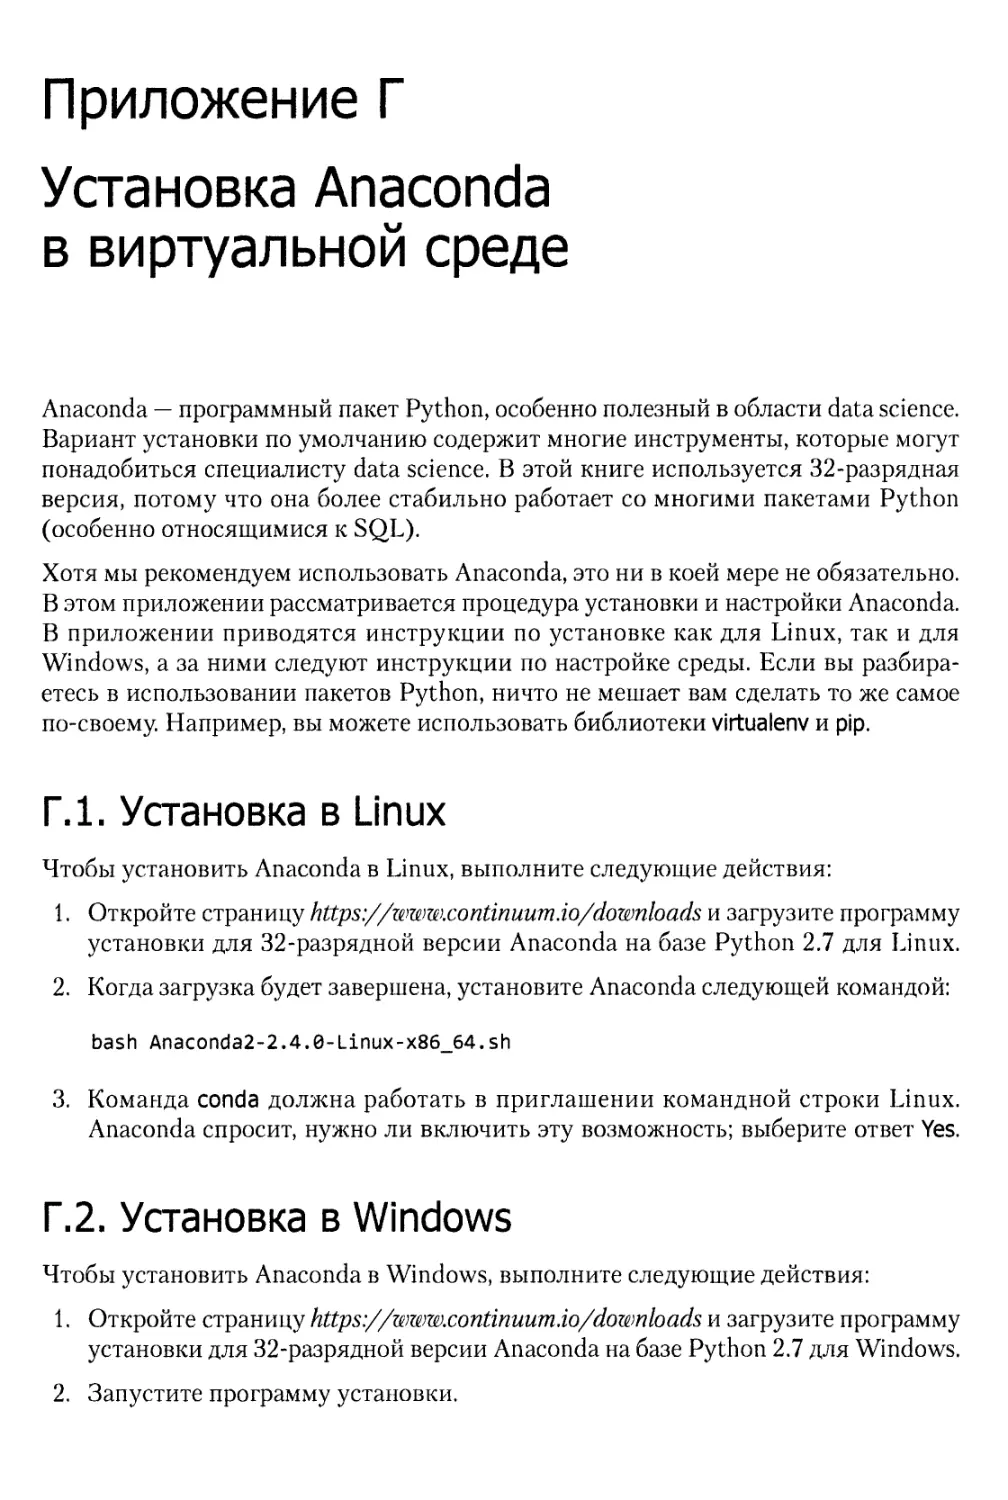 Приложение Г. Установка Anaconda в виртуальной среде
Г.2. Установка в Windows